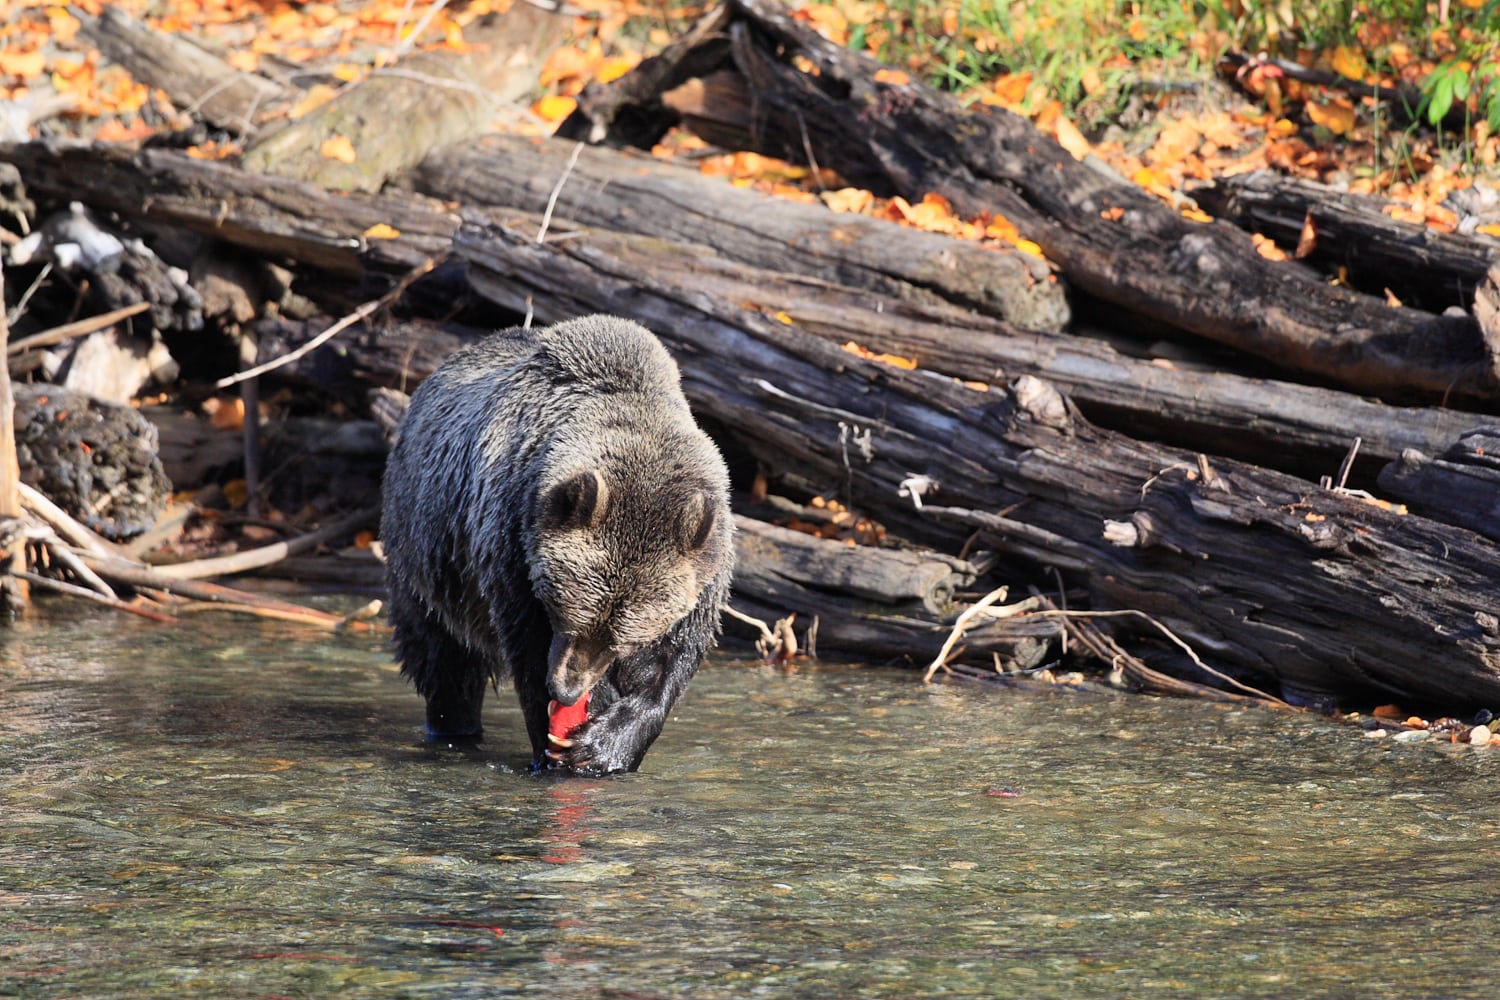 A bear eating salmon at Wild Bear Lodge